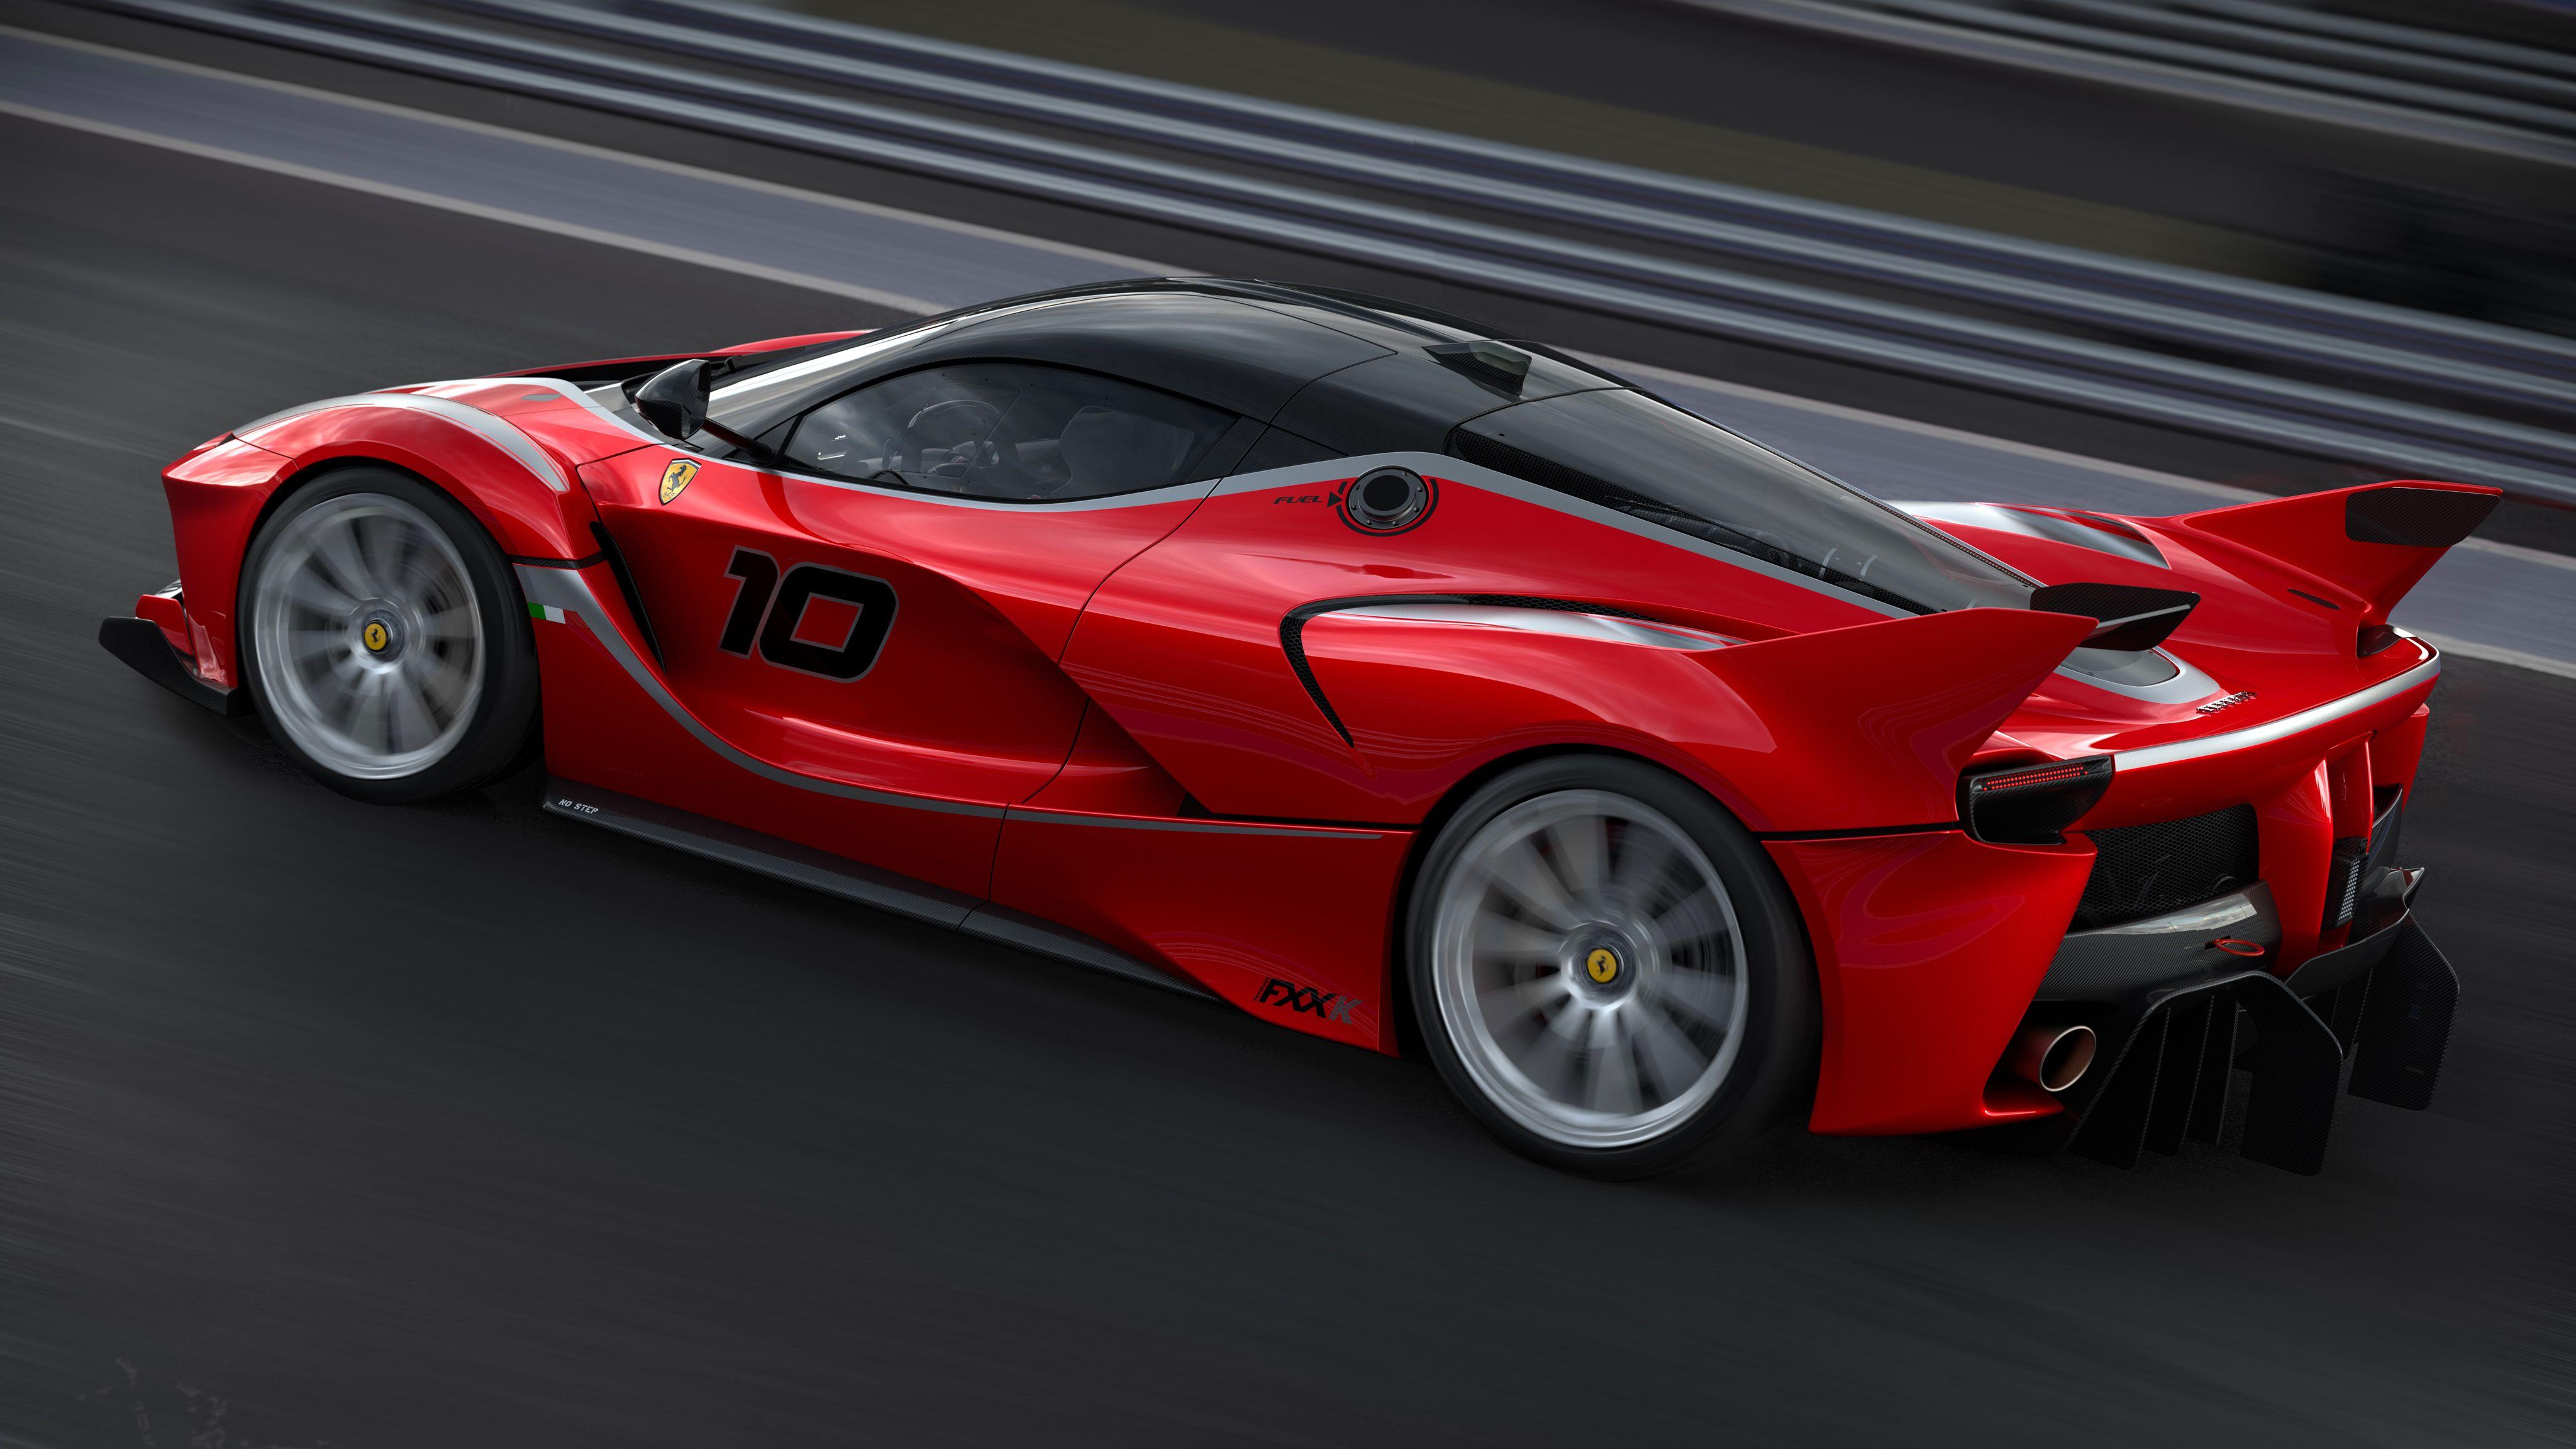 Ferrari FXX Wallpaper, Picture, Image